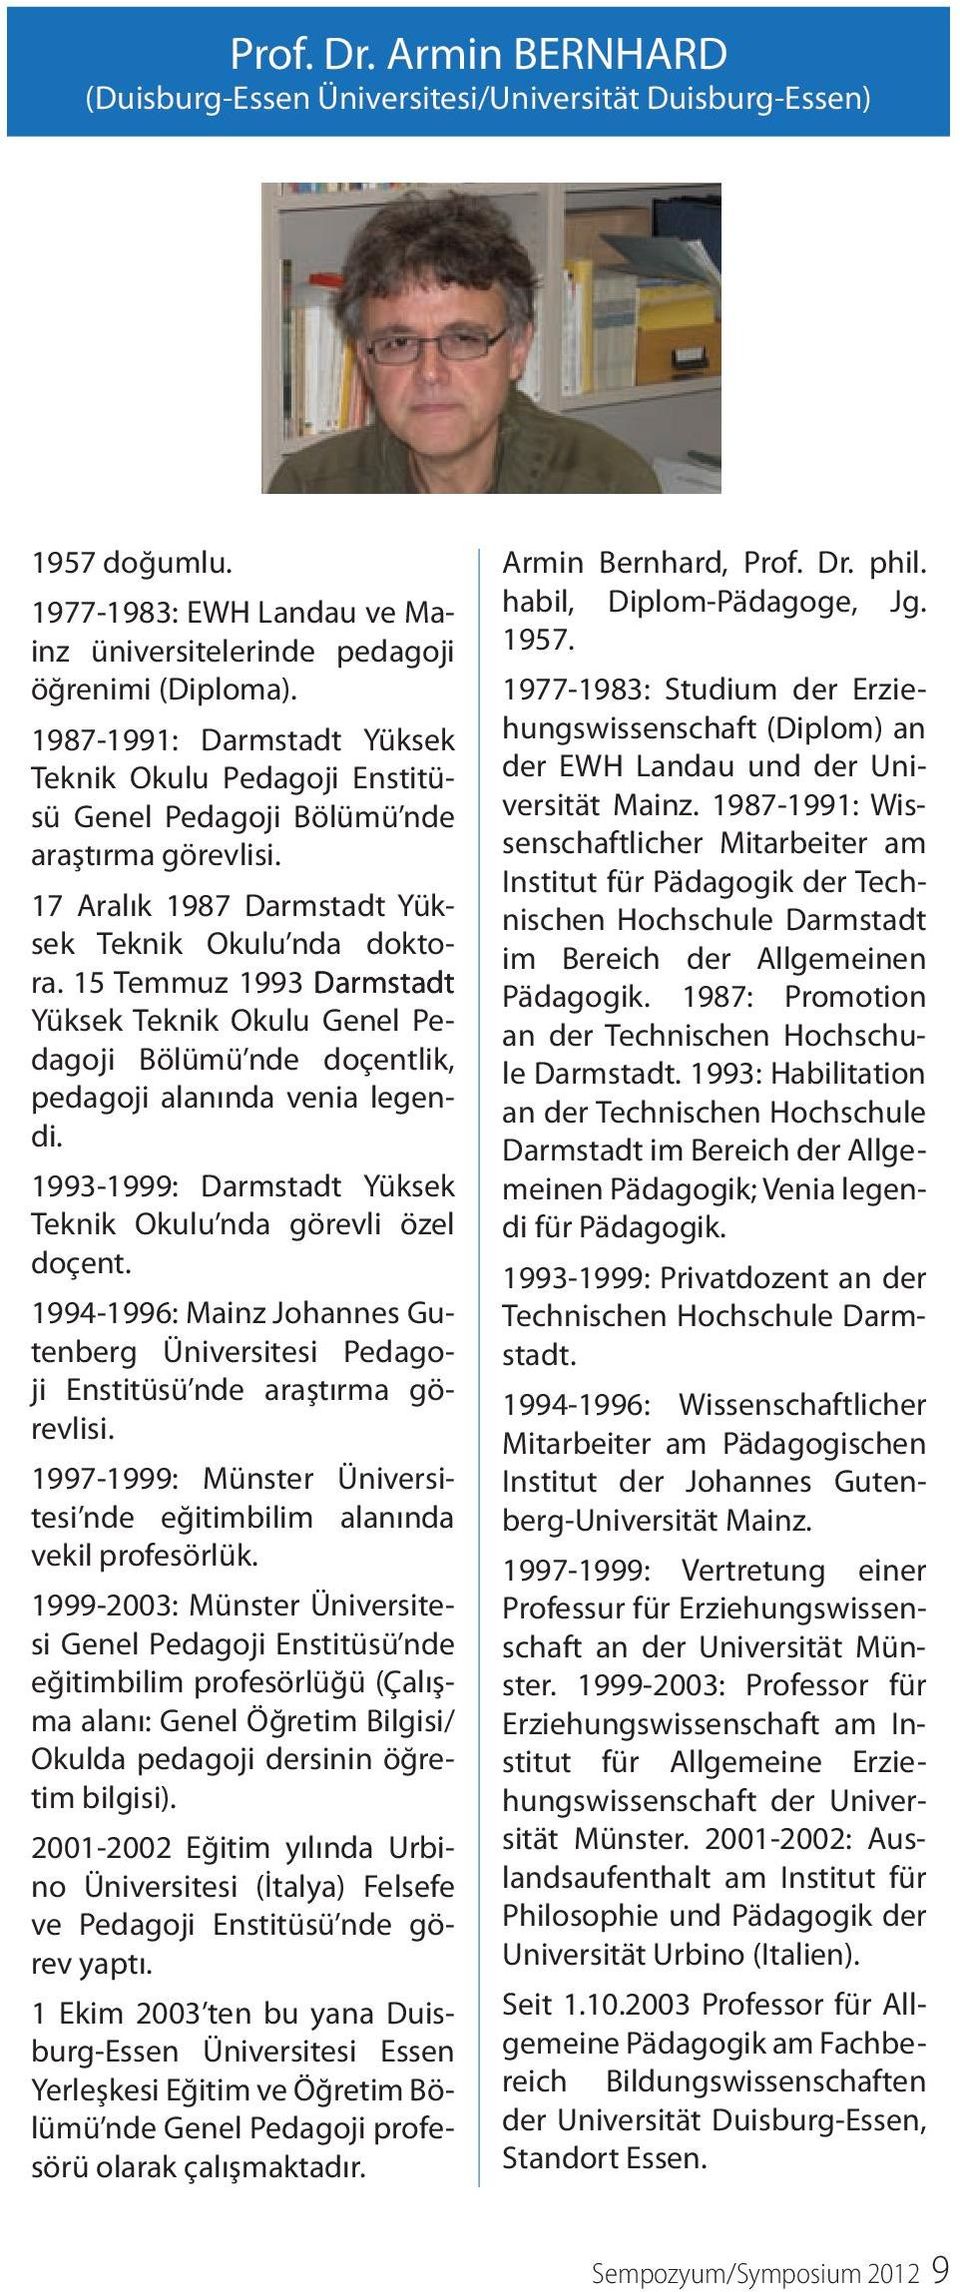 15 Temmuz 1993 Darmstadt Yüksek Teknik Okulu Genel Pedagoji Bölümü nde doçentlik, pedagoji alanında venia legendi. 1993-1999: Darmstadt Yüksek Teknik Okulu nda görevli özel doçent.